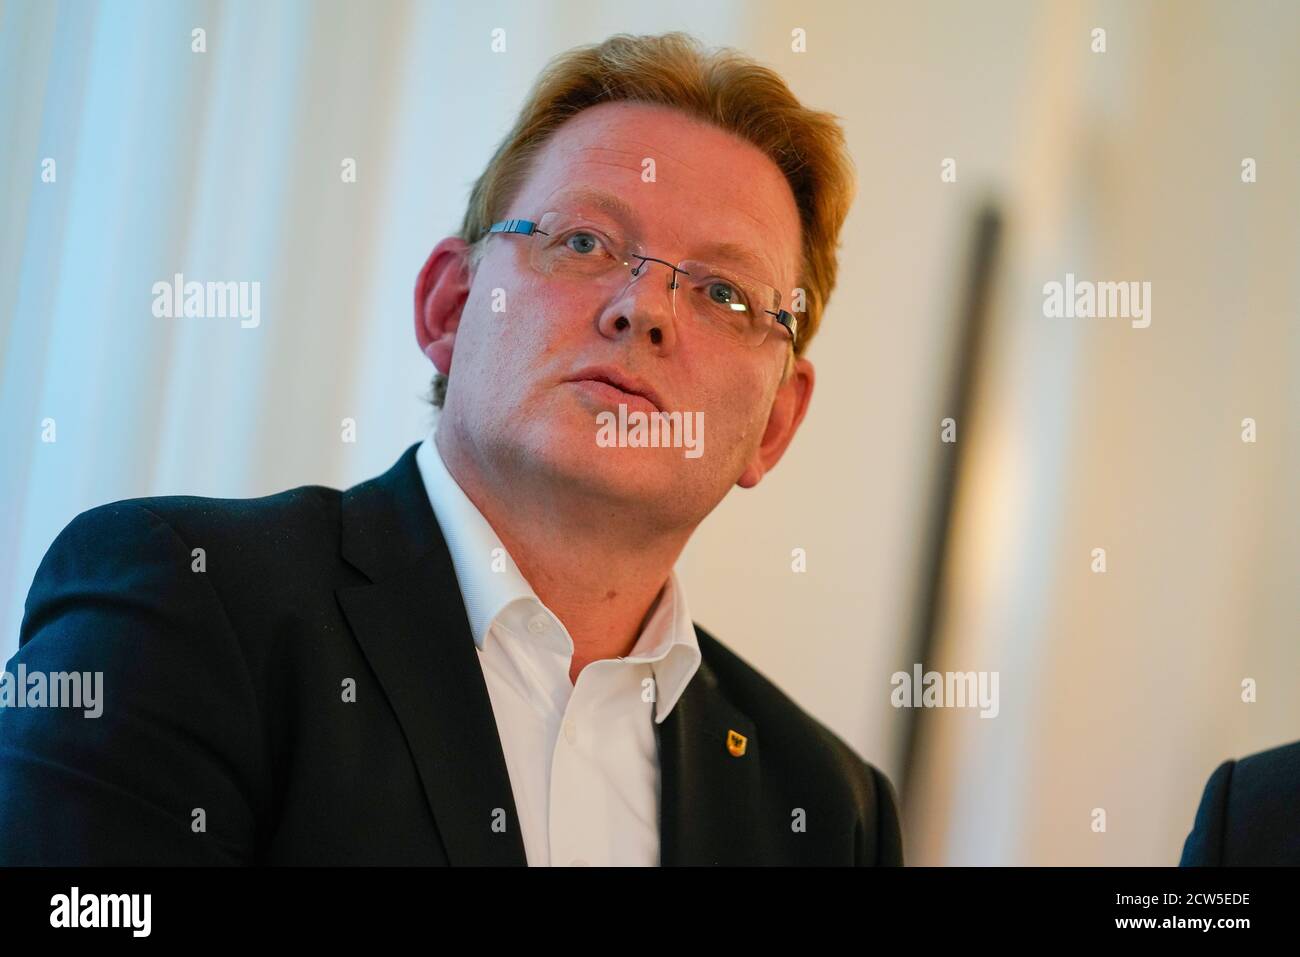 Dortmund, 27.9.2020: Andreas Hollstein (CDU, im Fraktionssaal der CDU), ist bei der Oberbürgermeister-Stichwahl im Rahmen der Kommunalwahl 2020 gegen den SPD-Kandidaten Thomas Westphal (nicht im Bild) unterlegen. Stock Photo